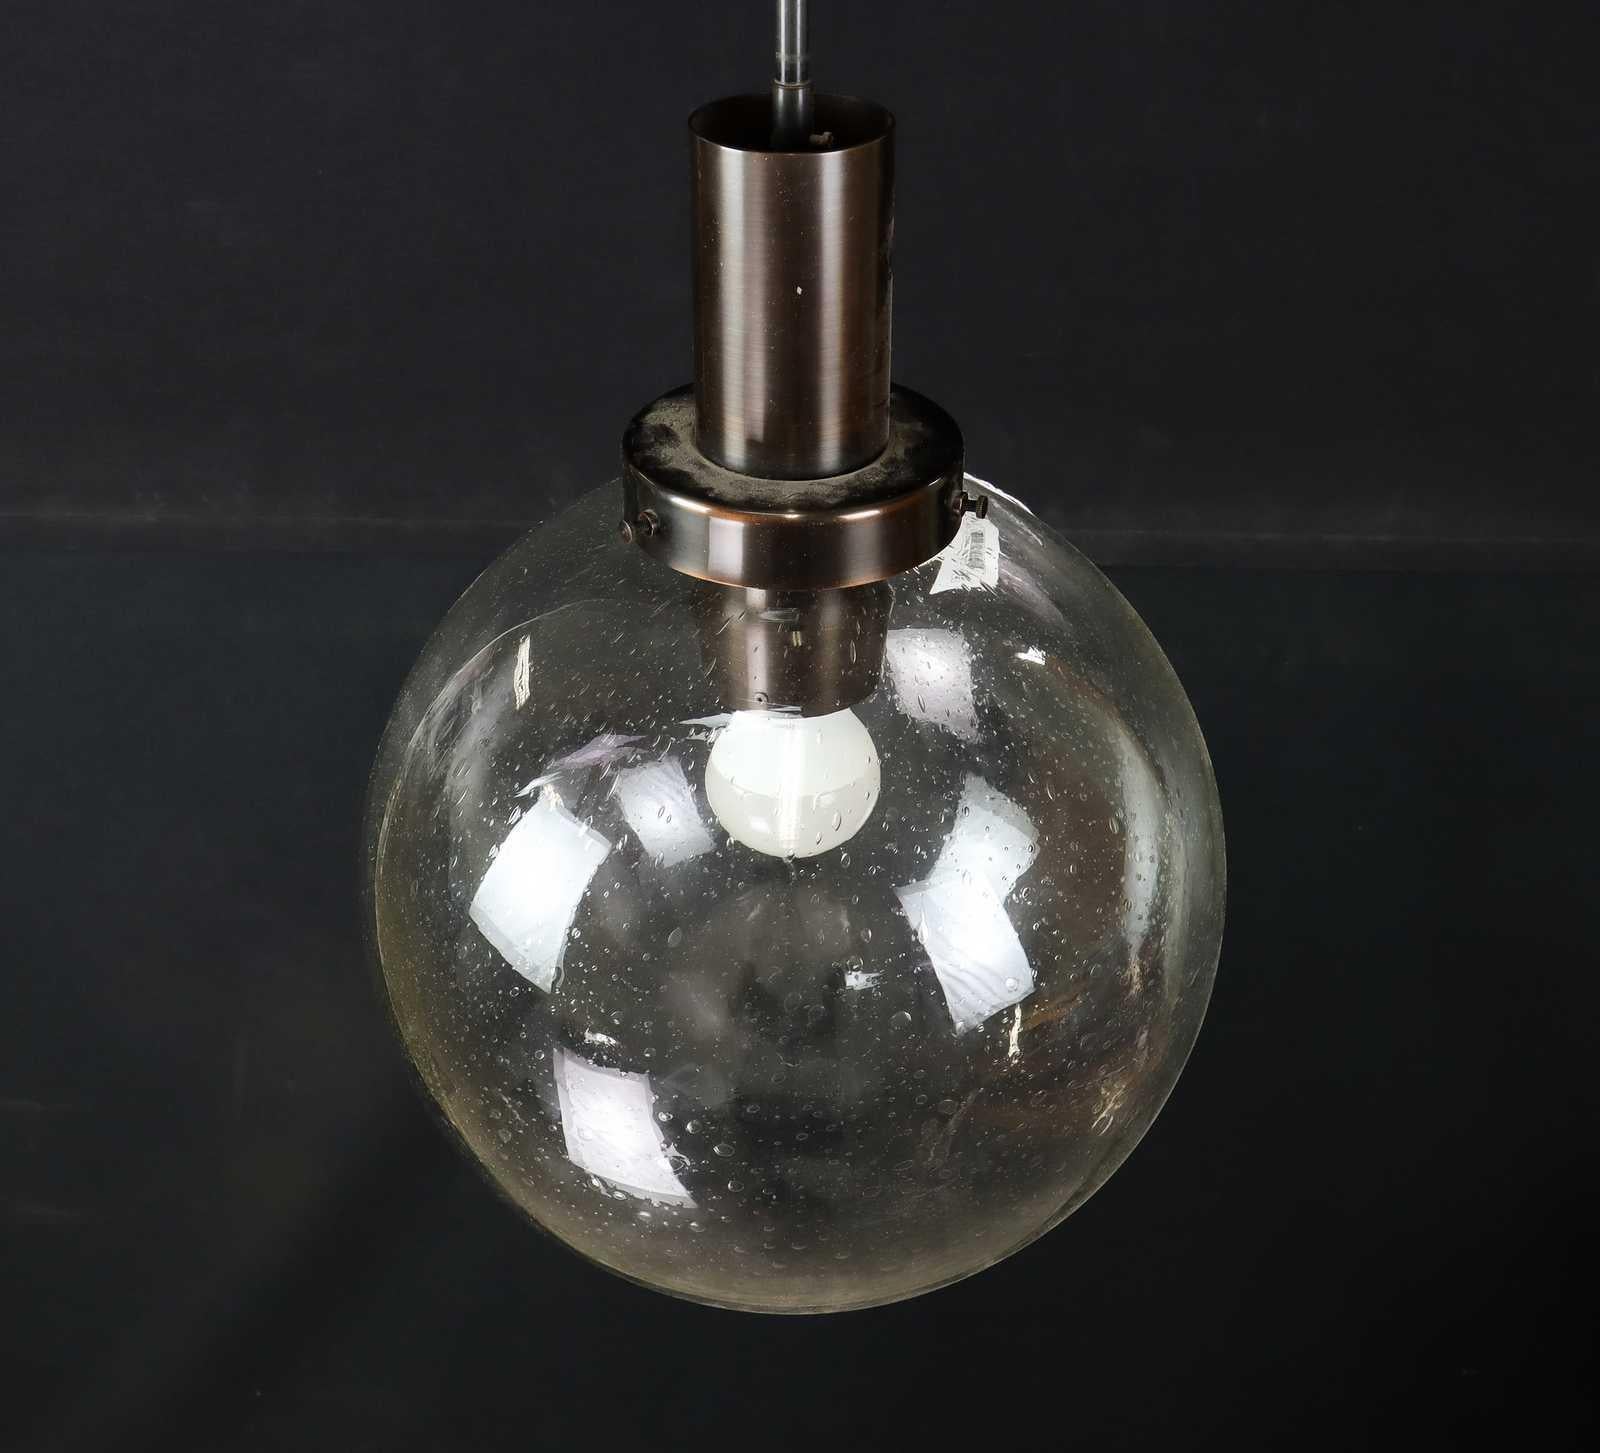 Exquise lampe suspendue fabriquée en Suède par Hans-Agne Agnes, Markaryd, en 1960. Ces lampes présentent une tige allongée en laiton bronzé, qui s'étend pour se connecter à l'élément en verre large et généreusement incurvé.  

 Cette lampe suspendue